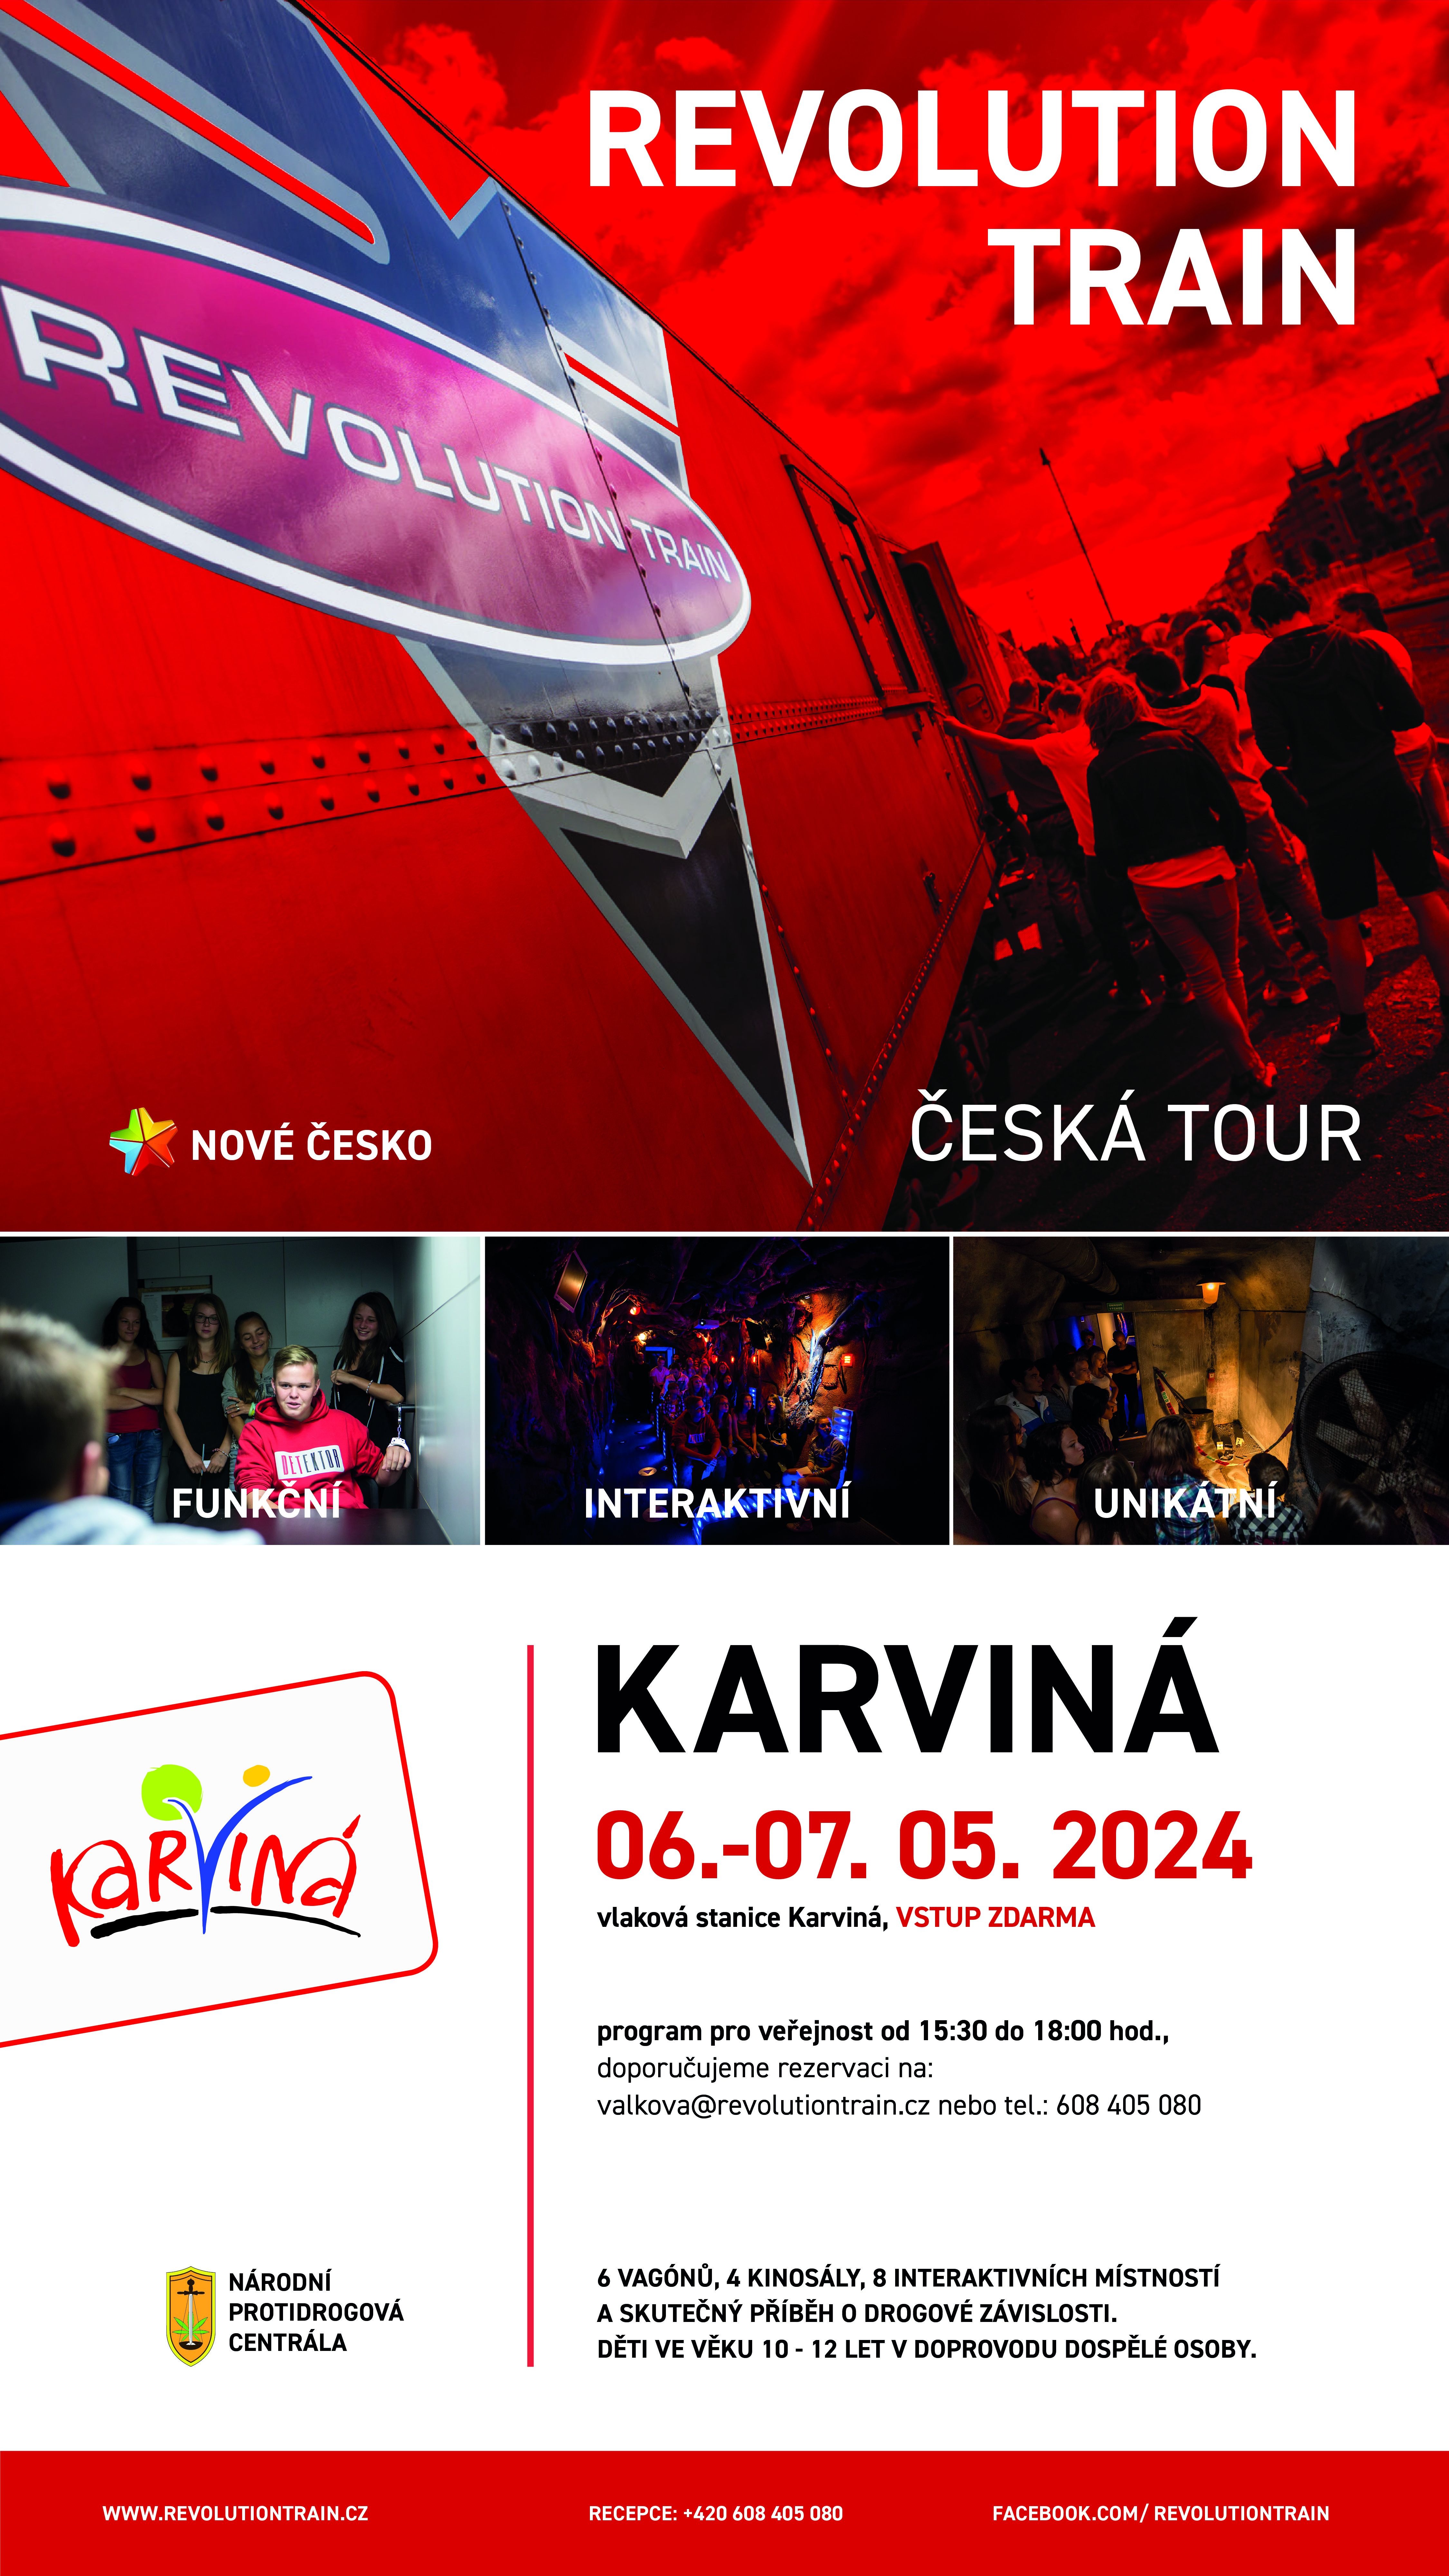 Česká tour - Revolution train  